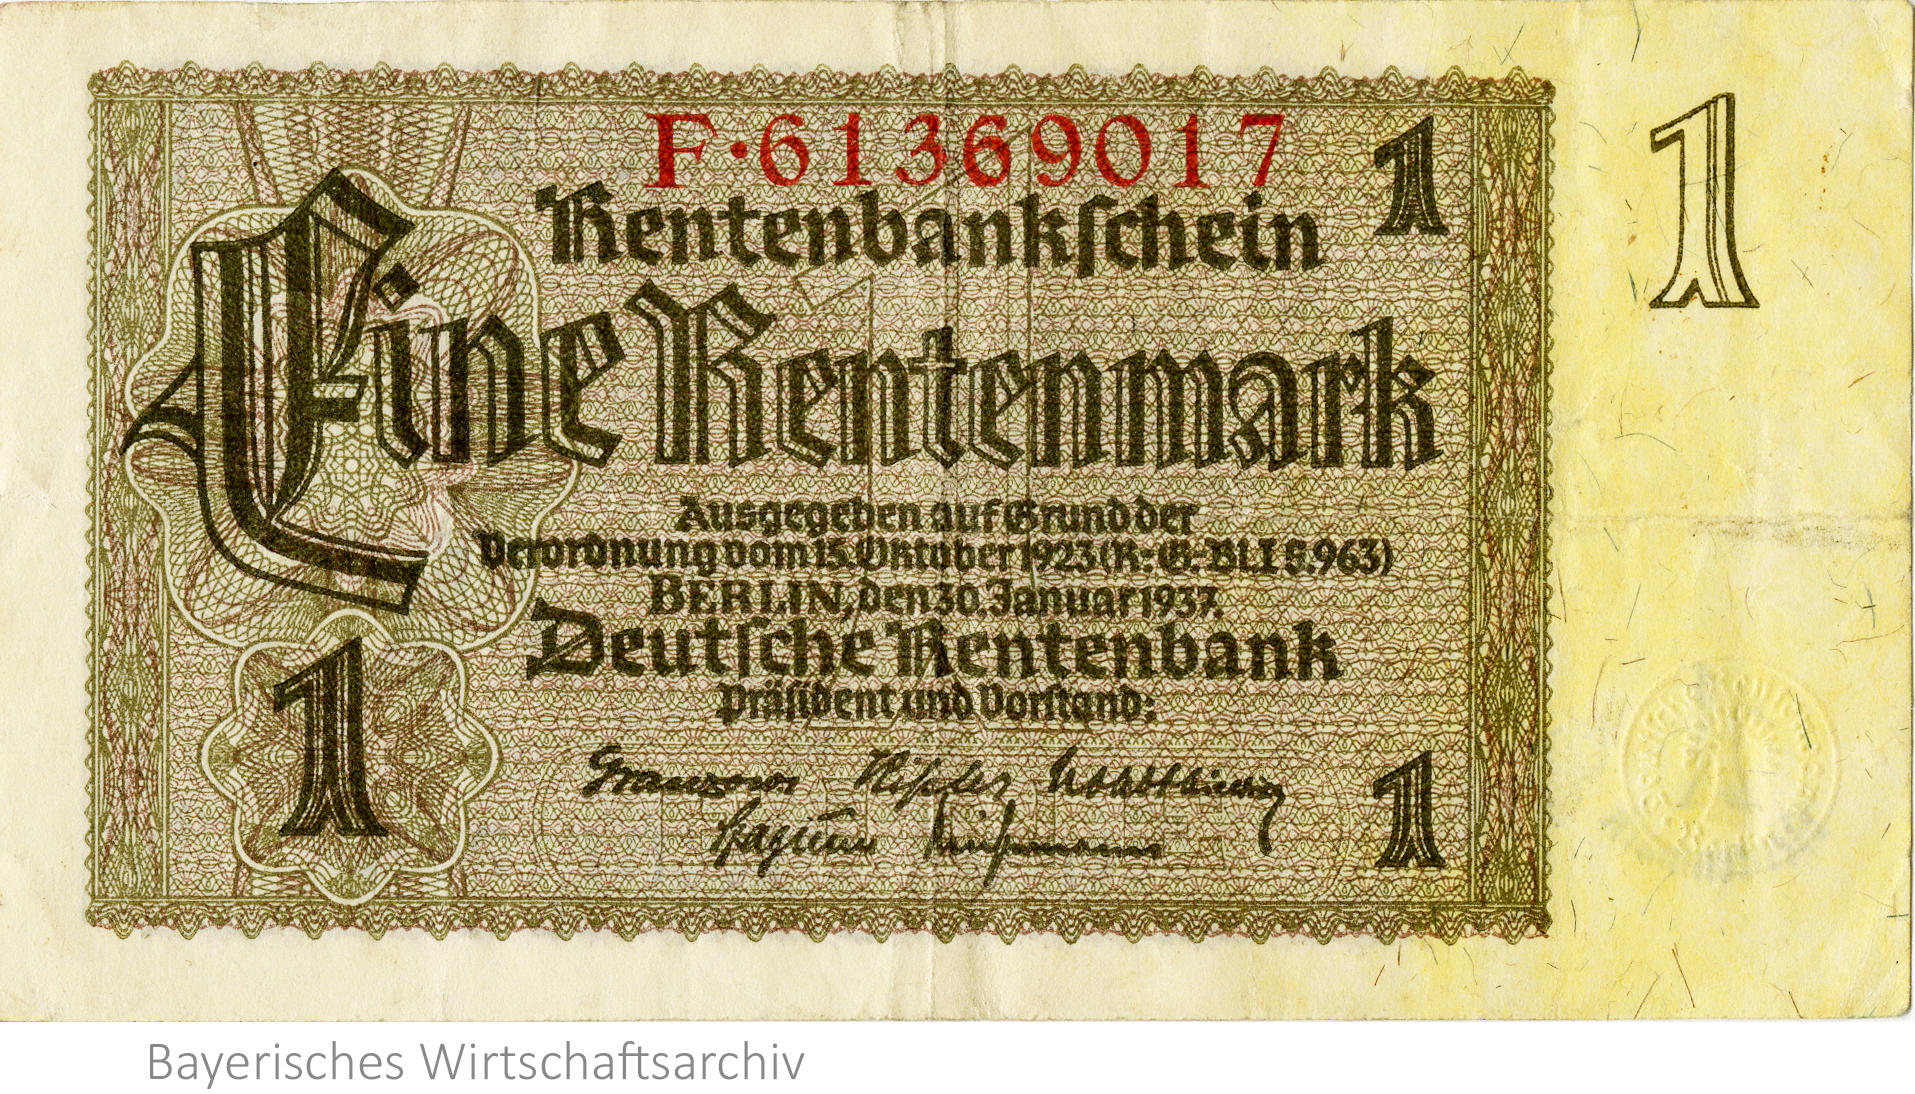 Rentenbankschein über eine Rentenmark, 30. Januar 1937